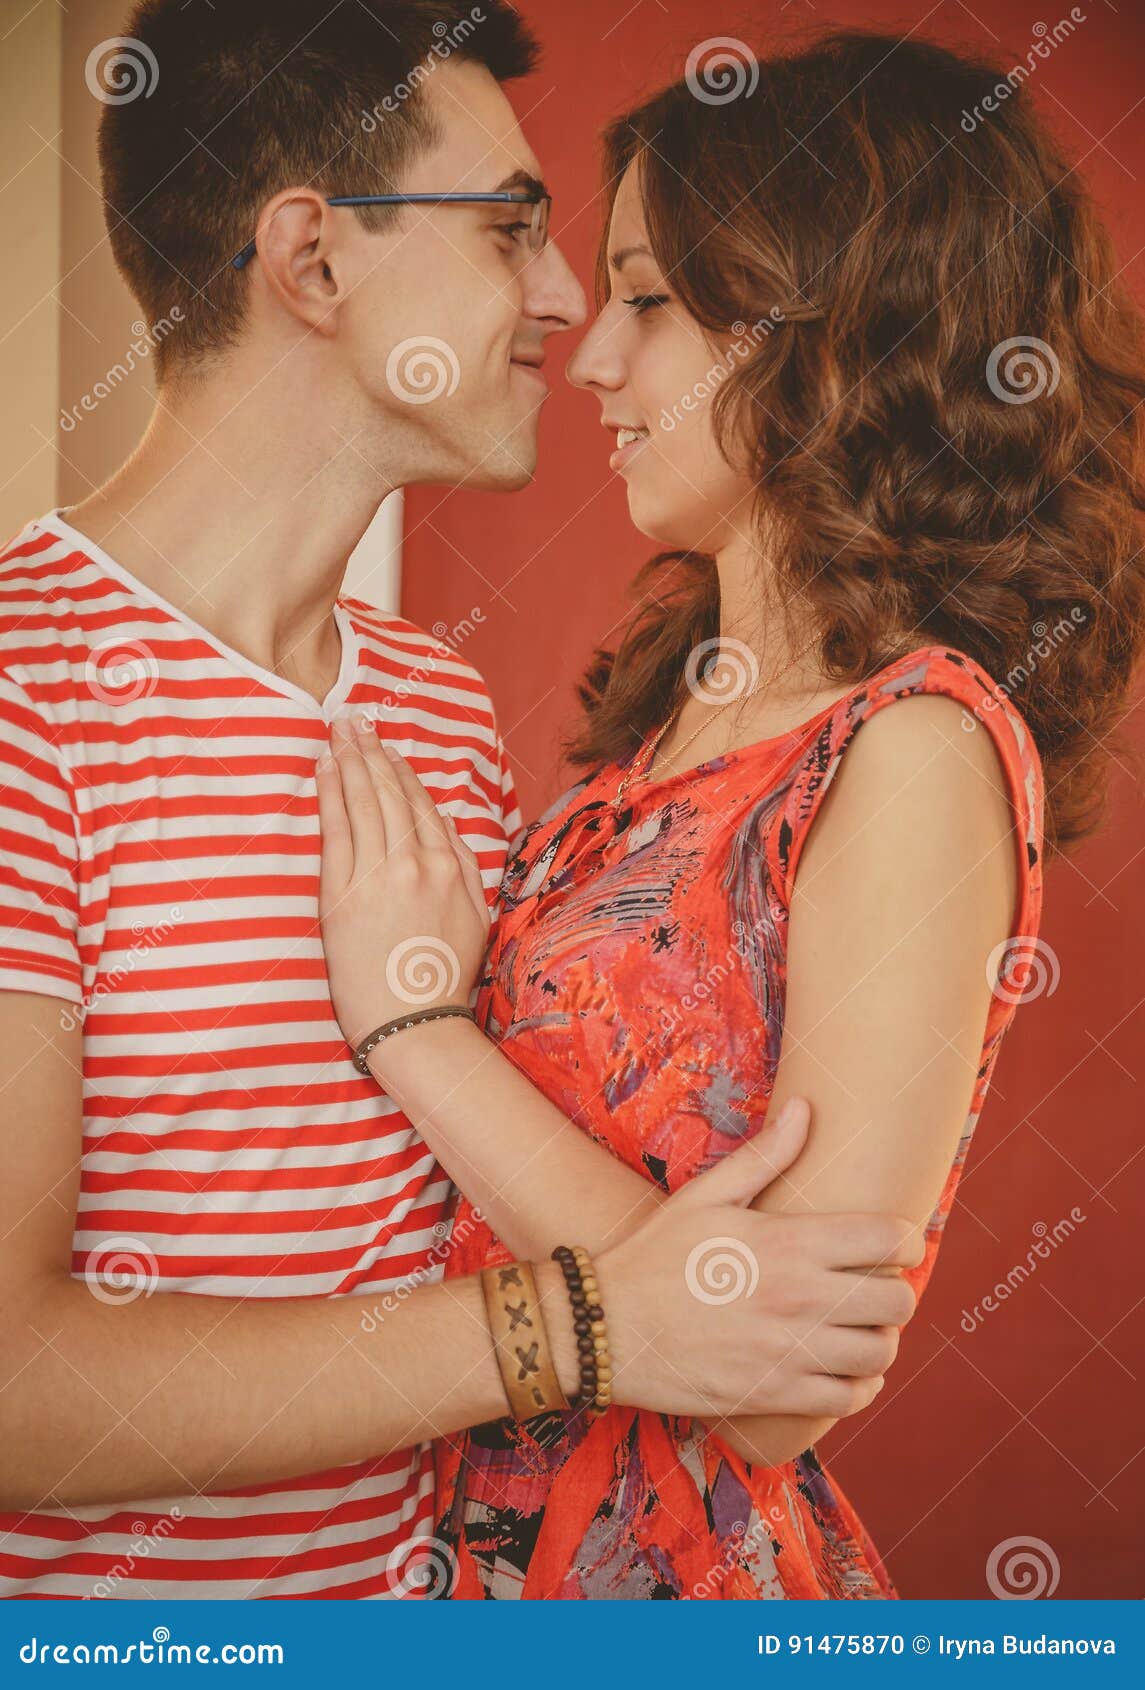 Un Couple Mignon Ensemble Un Moment Avant Un Baiser Embrassement Dhomme Et De Femme Moments De Bonheur Et Joie, Amour Et Tendres Photo stock